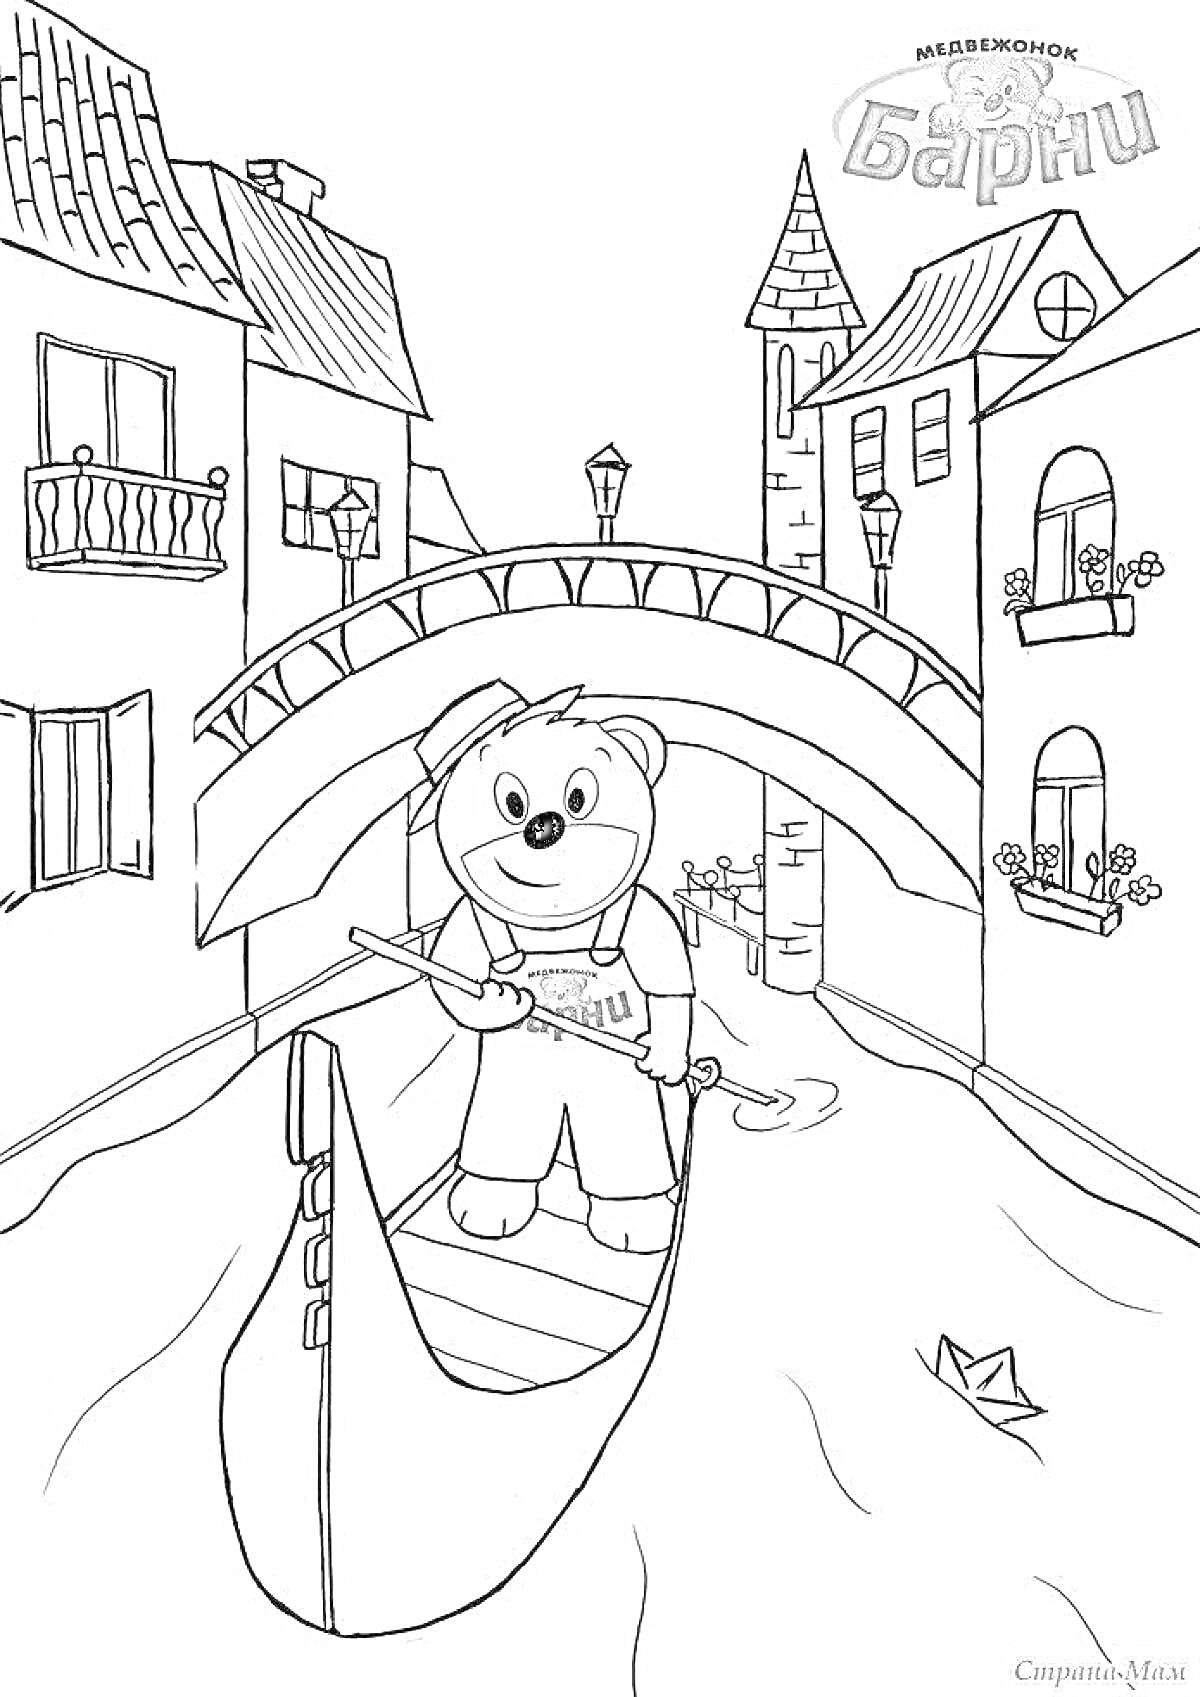 Медвежонок Барни на гондоле под мостом в канале города с домами